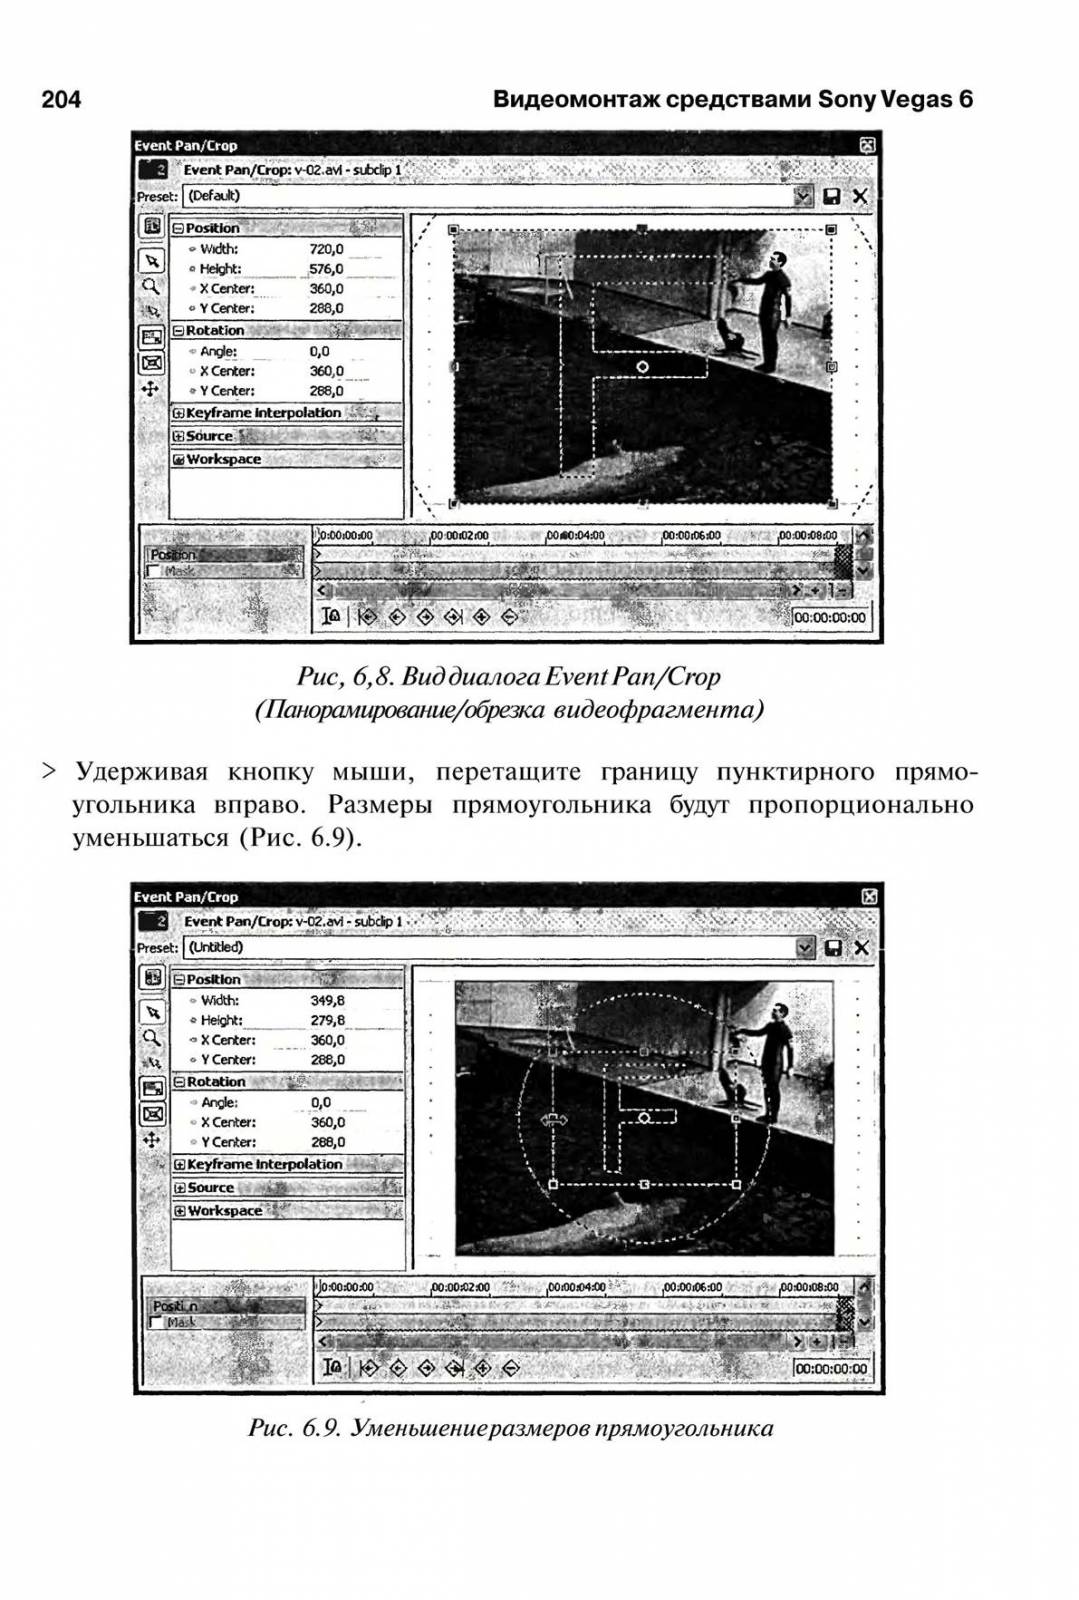 http://redaktori-uroki.3dn.ru/_ph/14/659072220.jpg